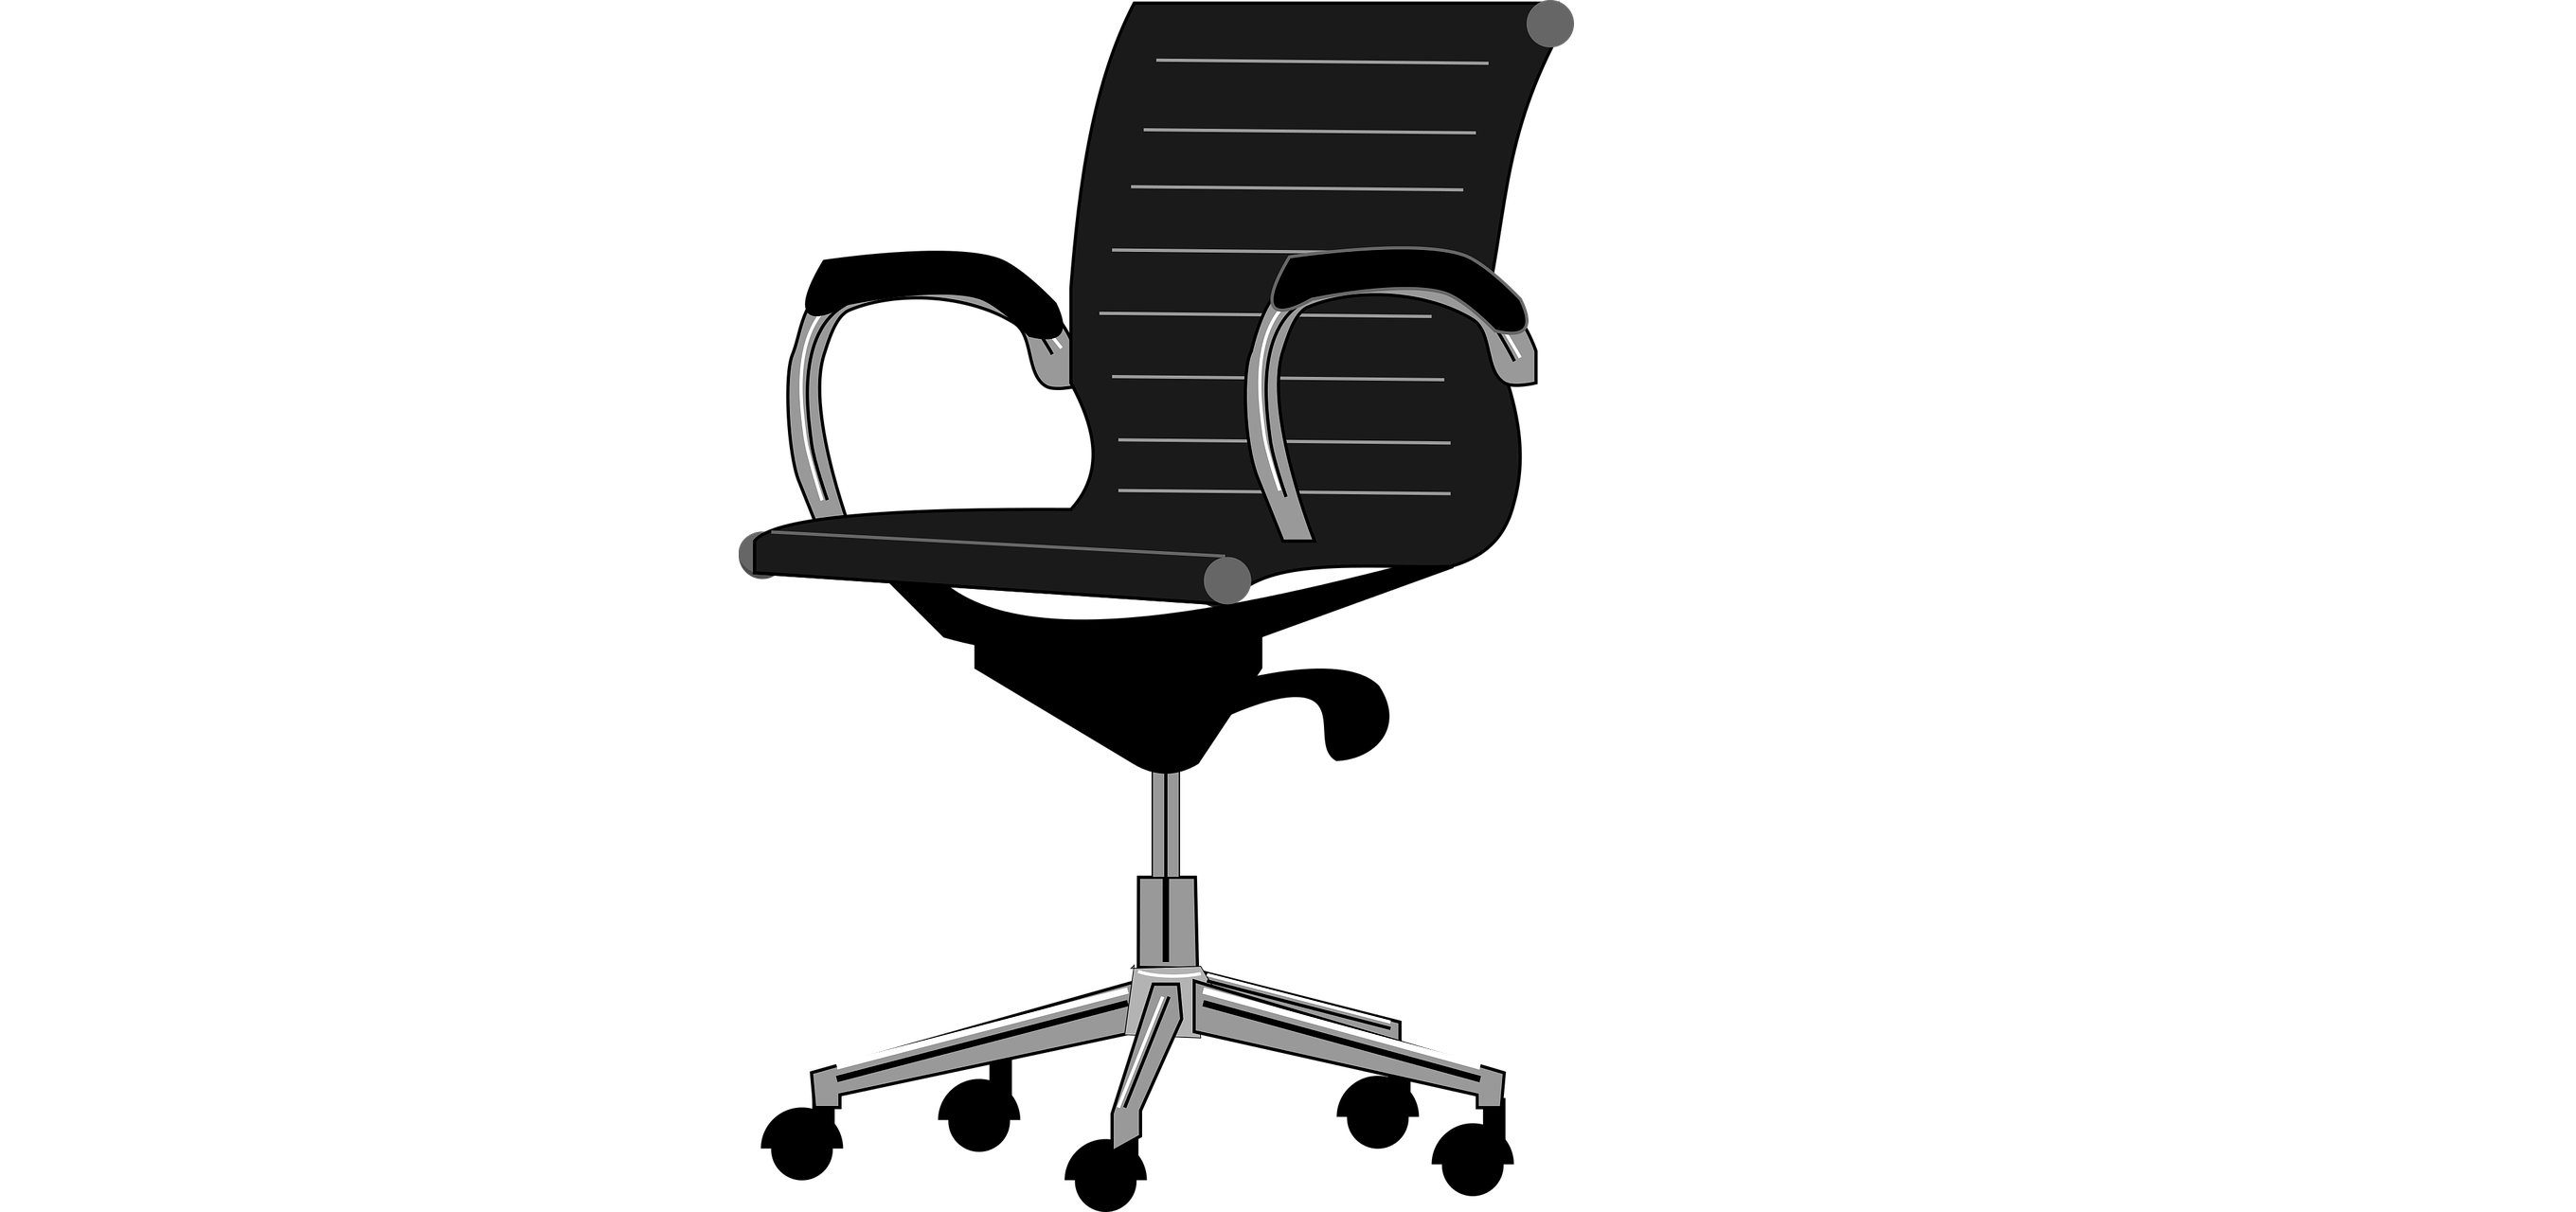 An Office Chair